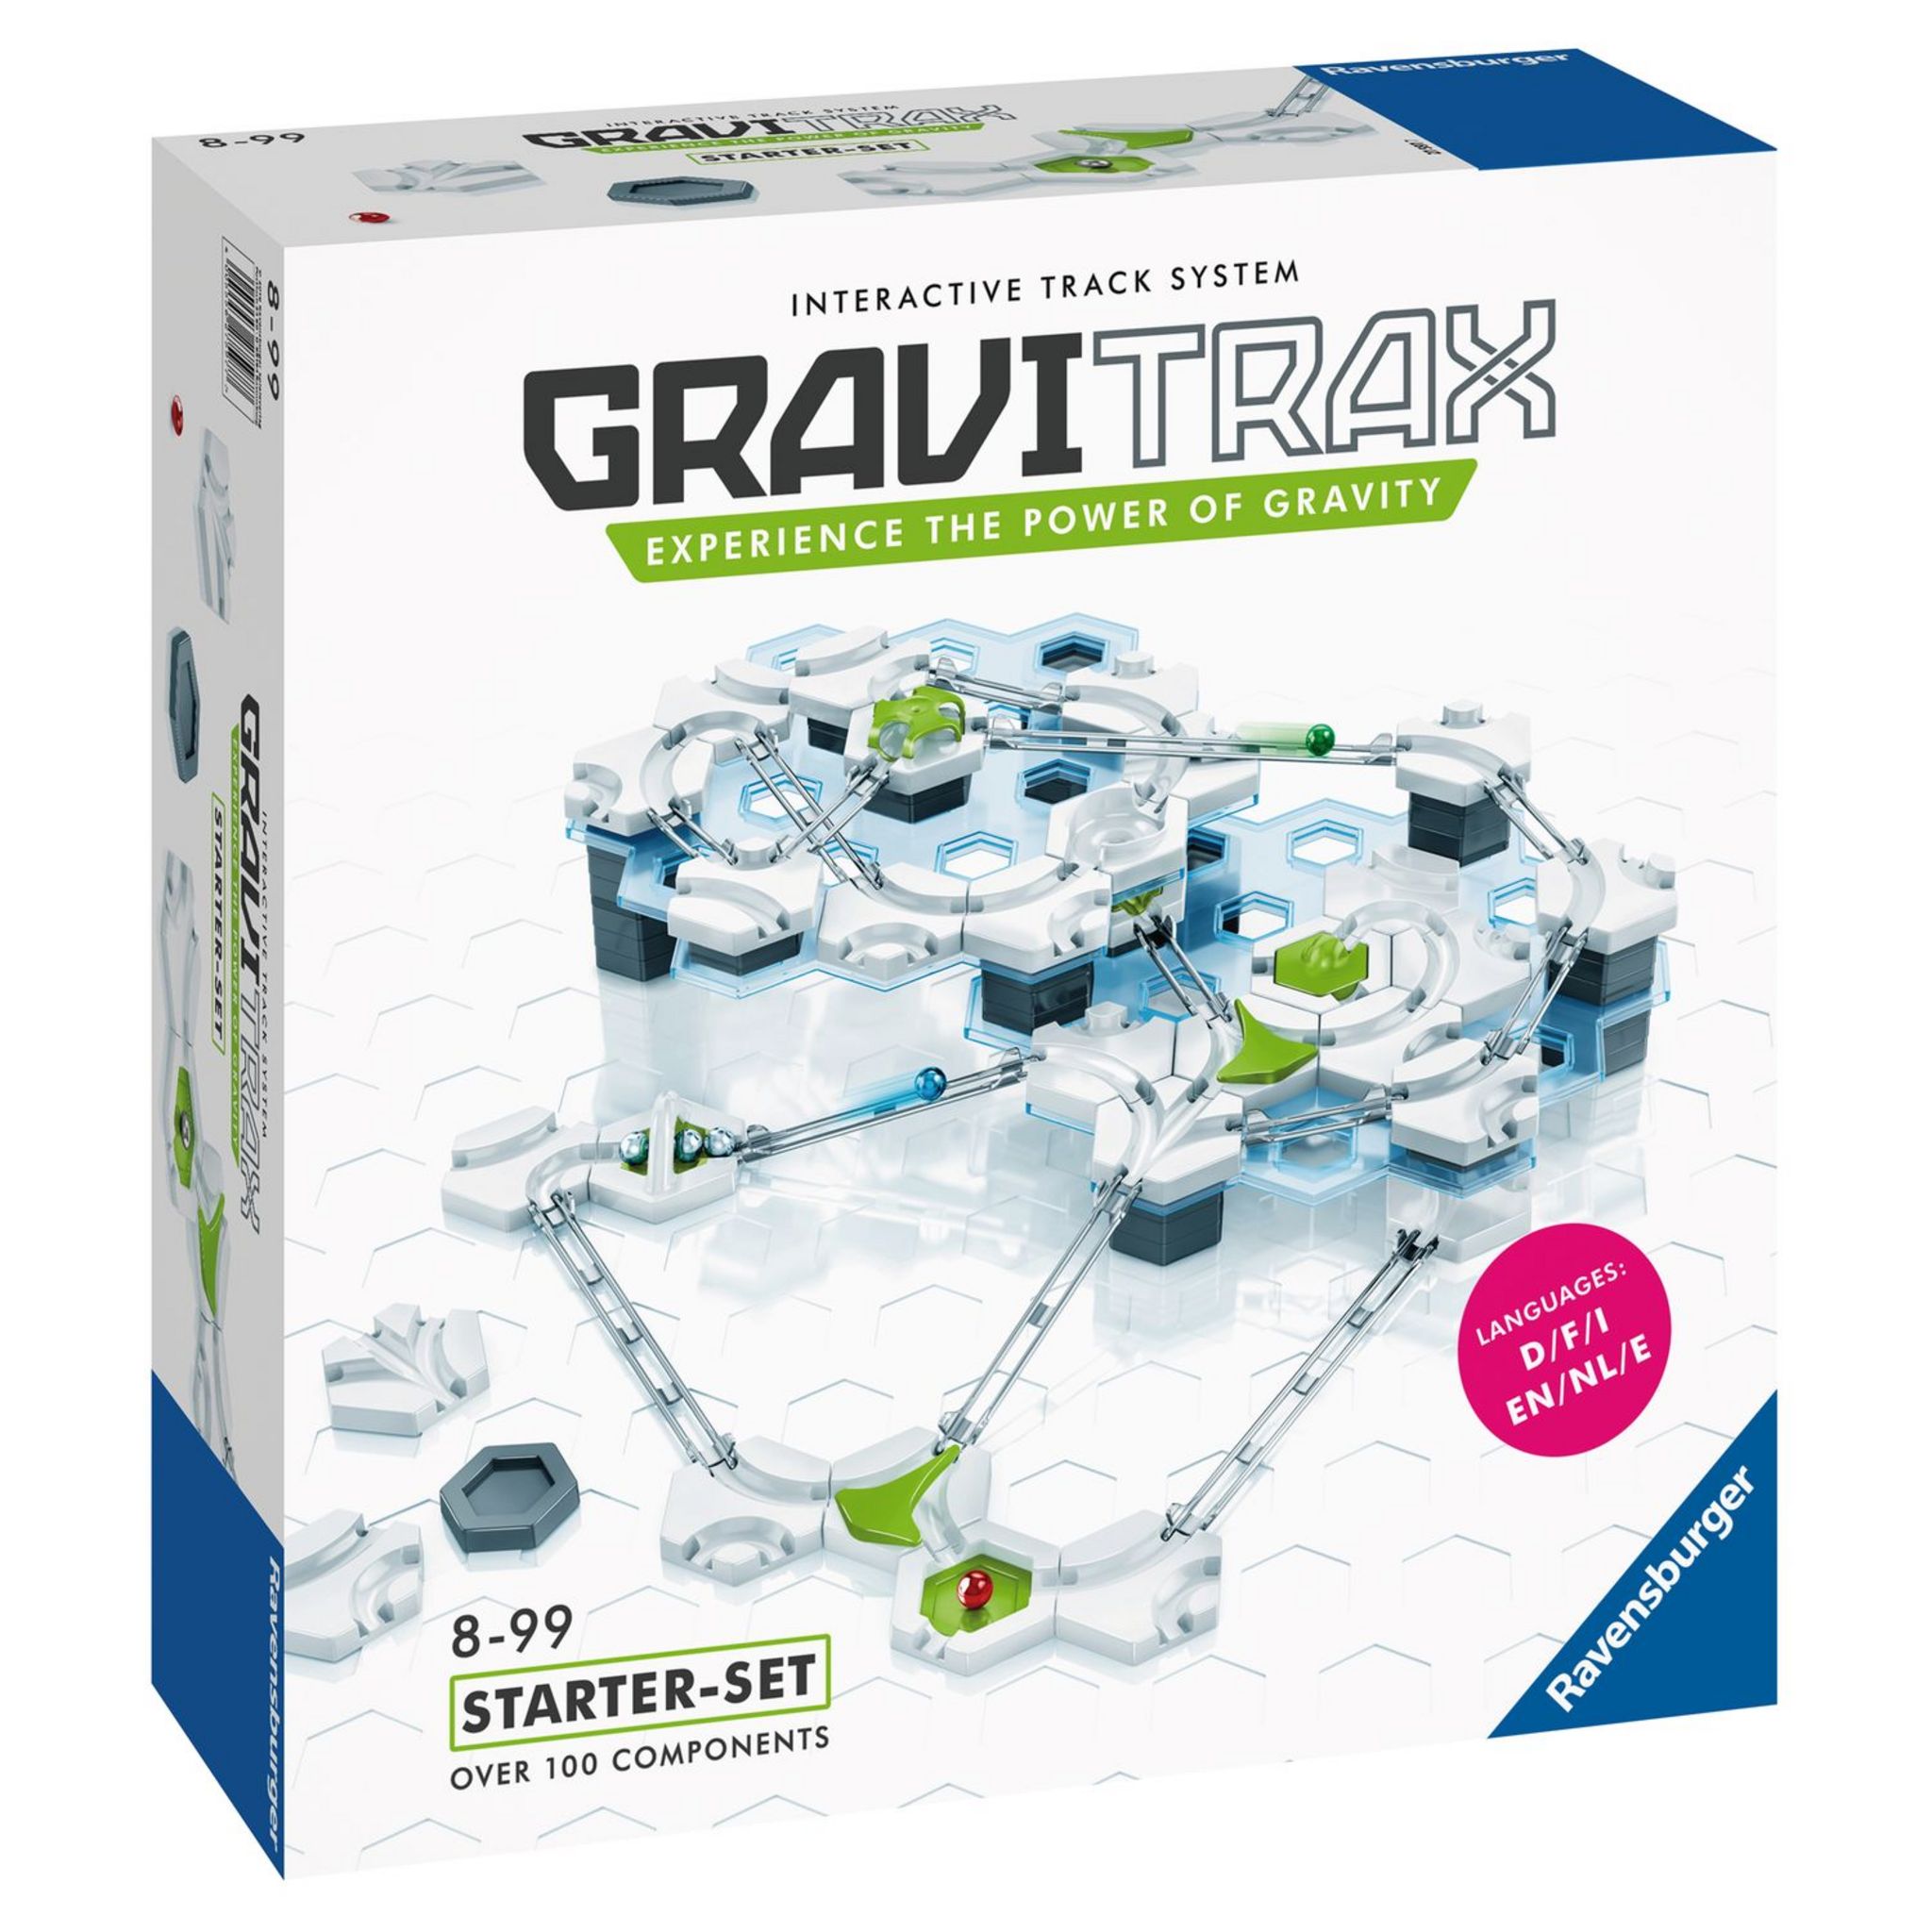 6 avis sur Jeu de construction Ravensburger Gravitrax Pro Starter Set  Extreme - Autres jeux de construction